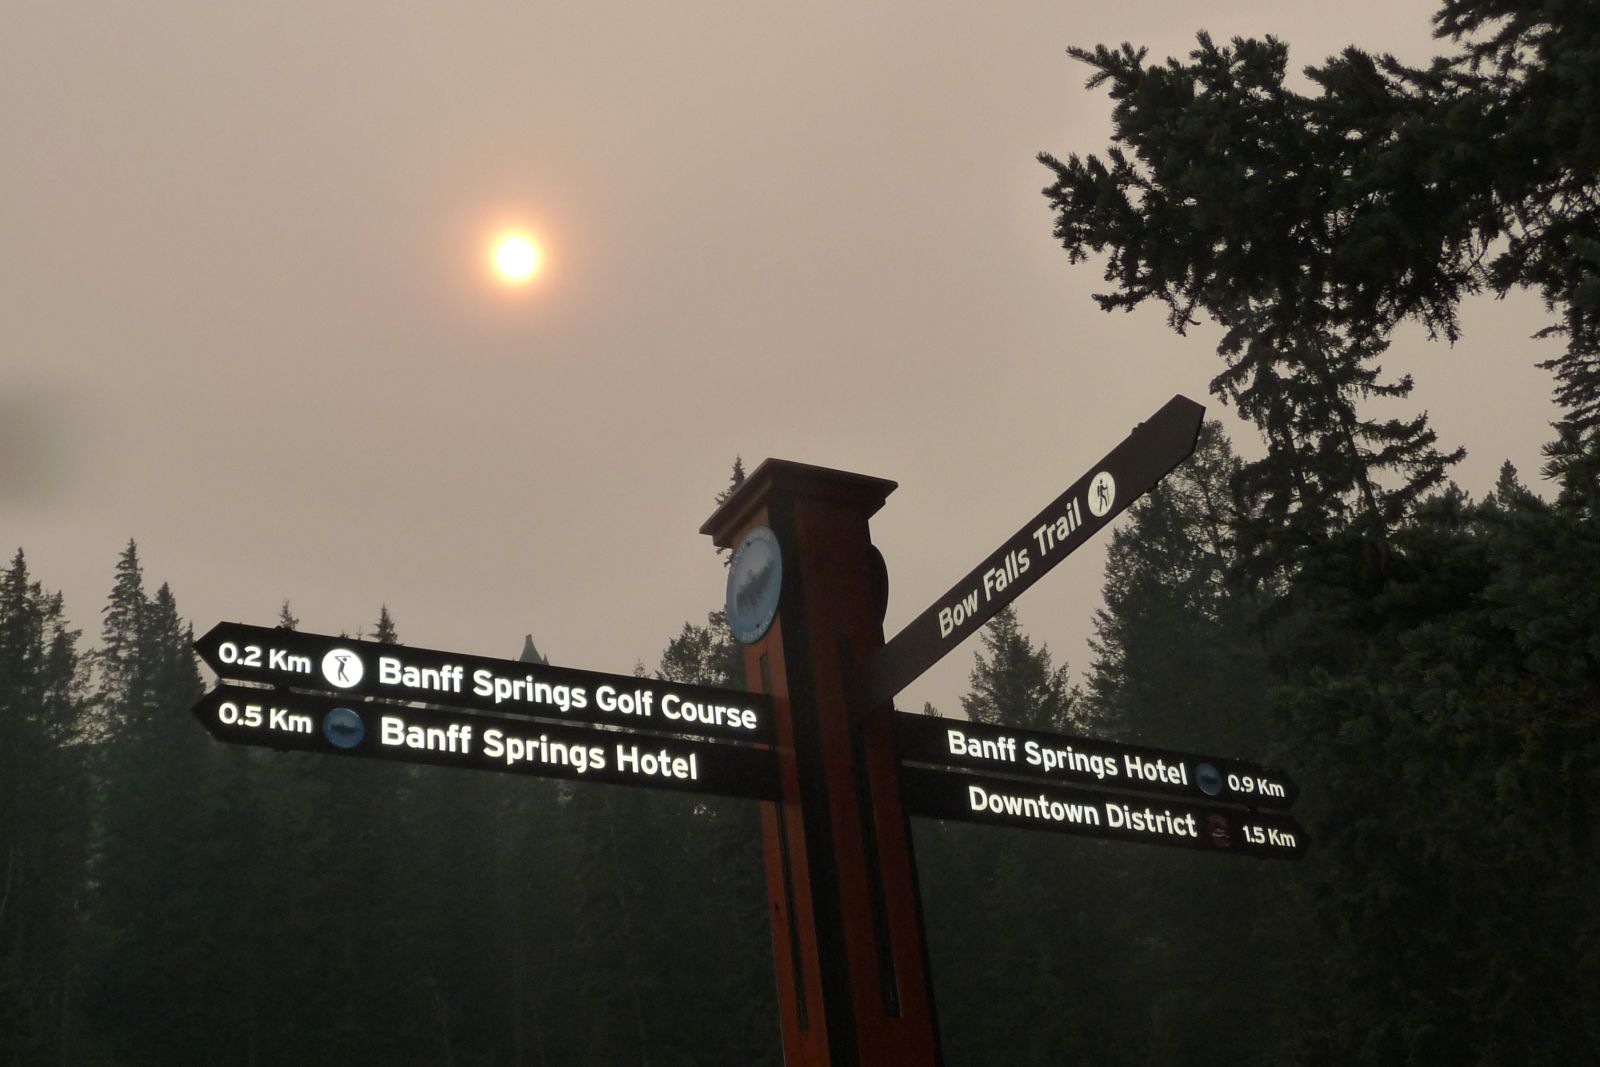 Der Rauch von Waldbränden in den USA lässt die Sonne in einem seltsamen Licht erscheinen